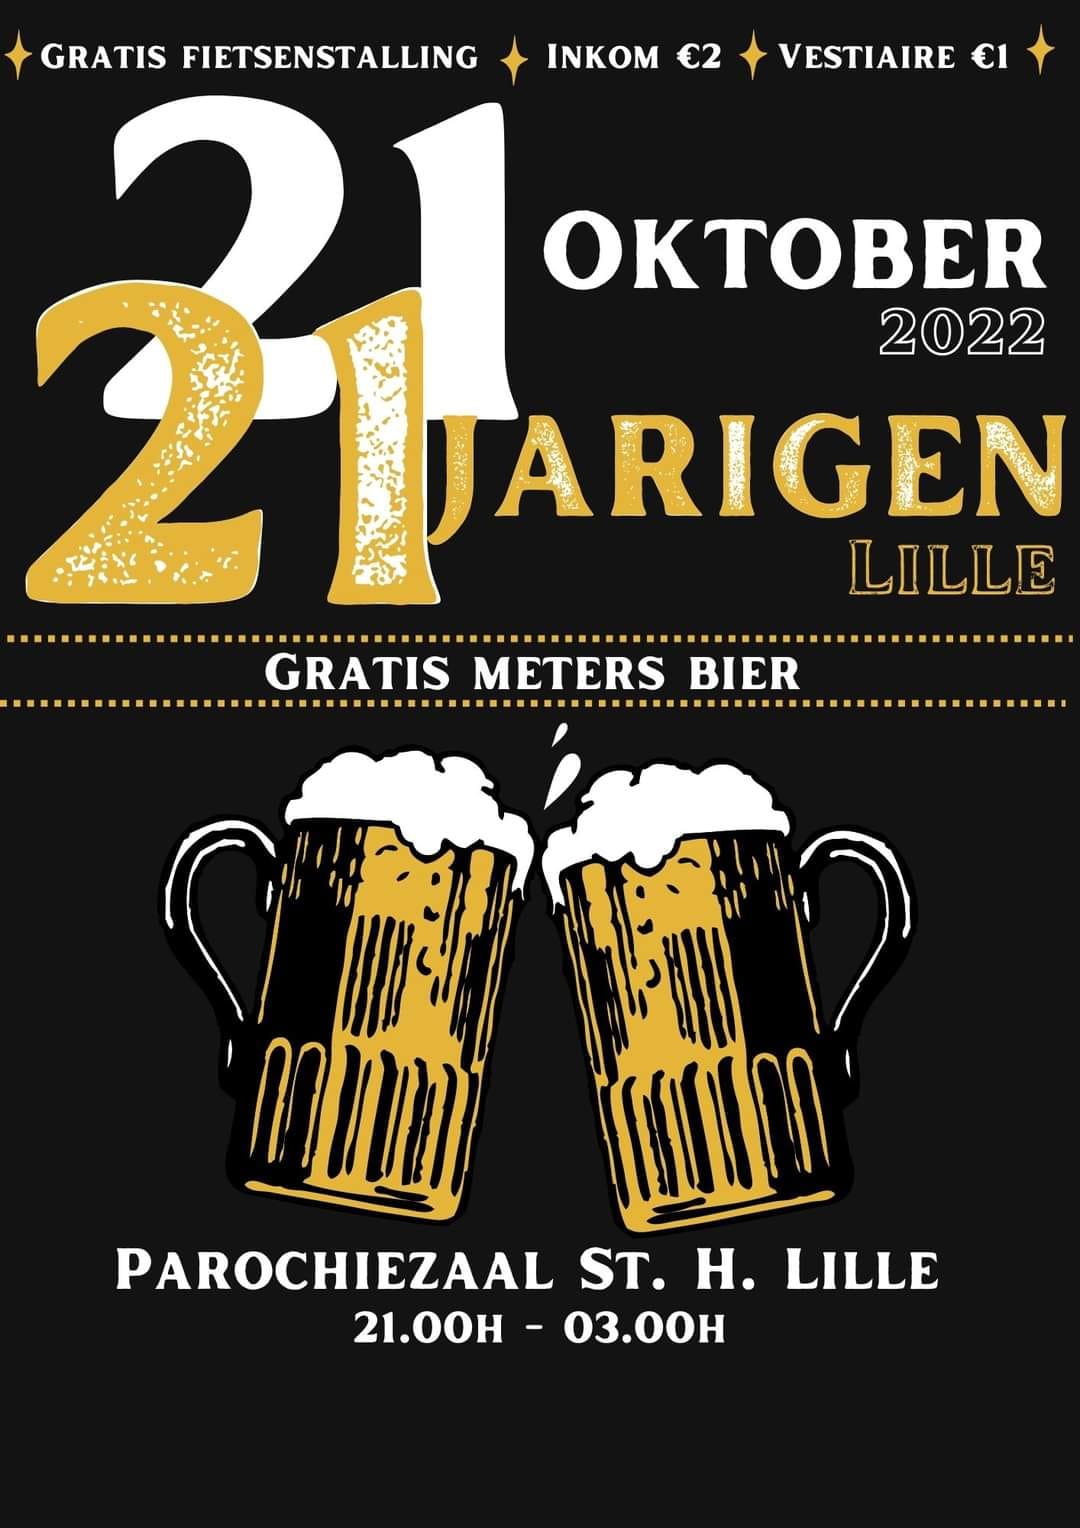 21-Jarigen-Lille